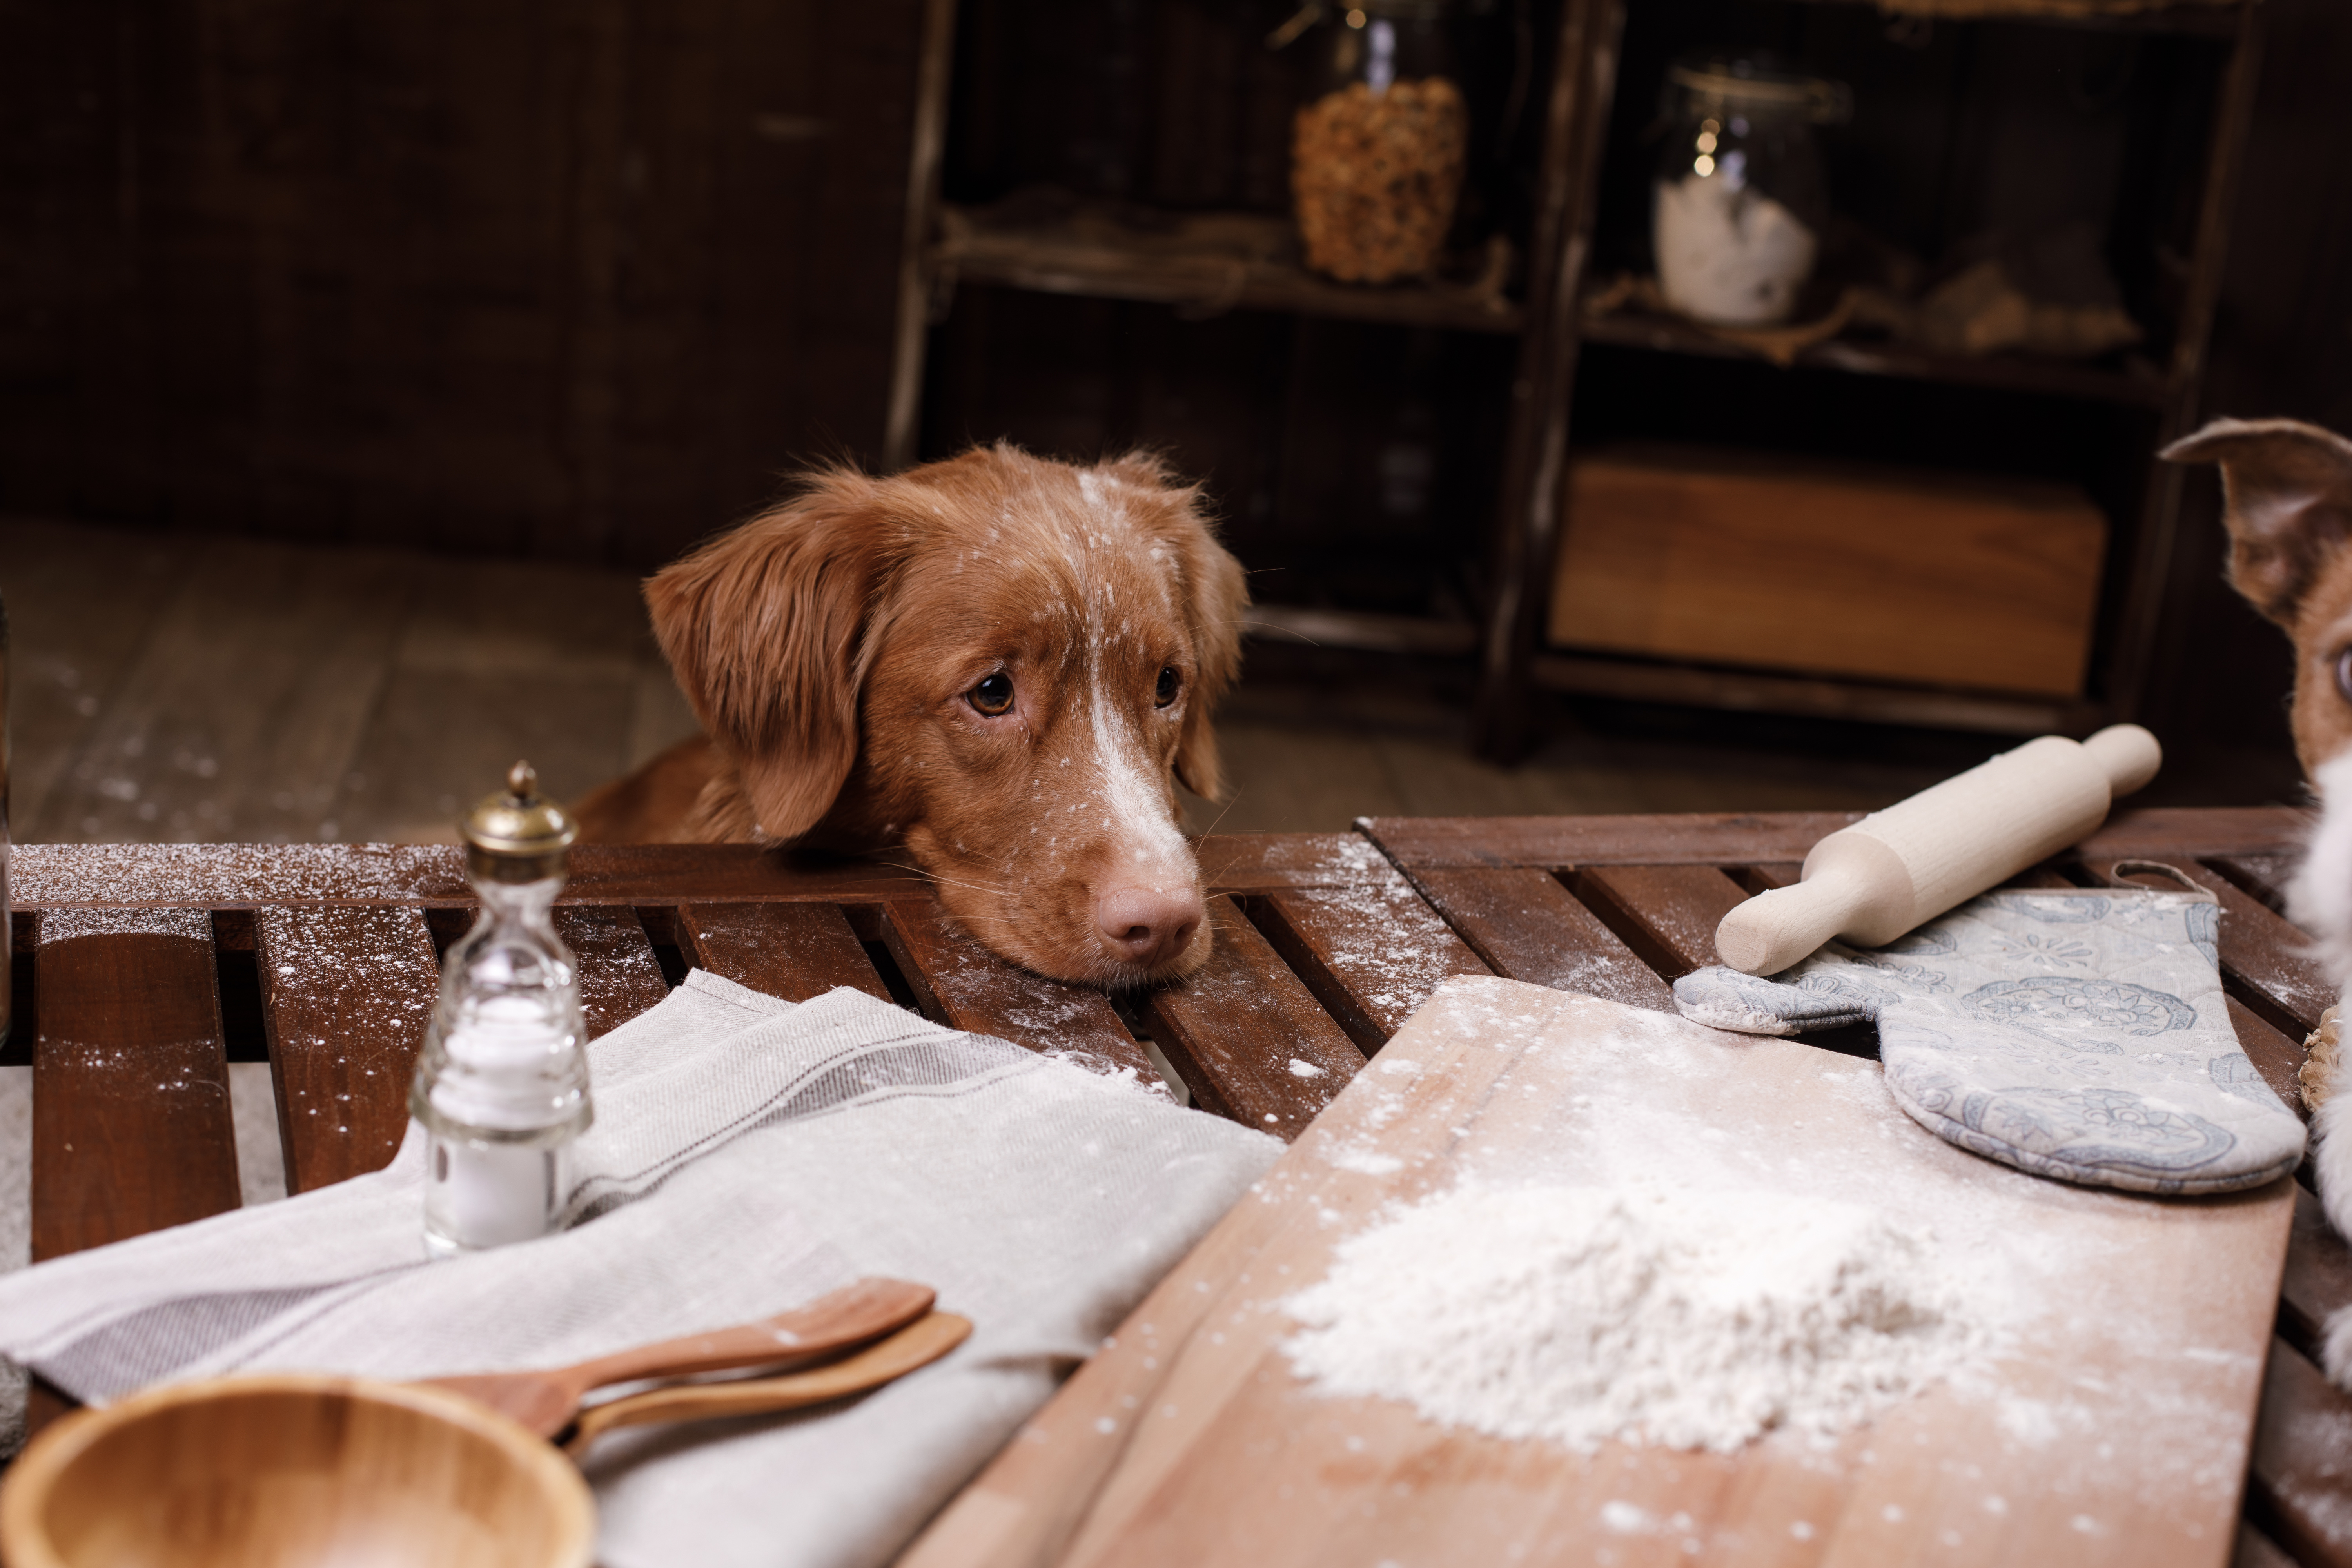  Ein Hund legt seinen Kopf auf dem Tisch, auf diesem liegen ein Nudelholz, ein Brett mit Mehl und weitere Utensilien zum backen.